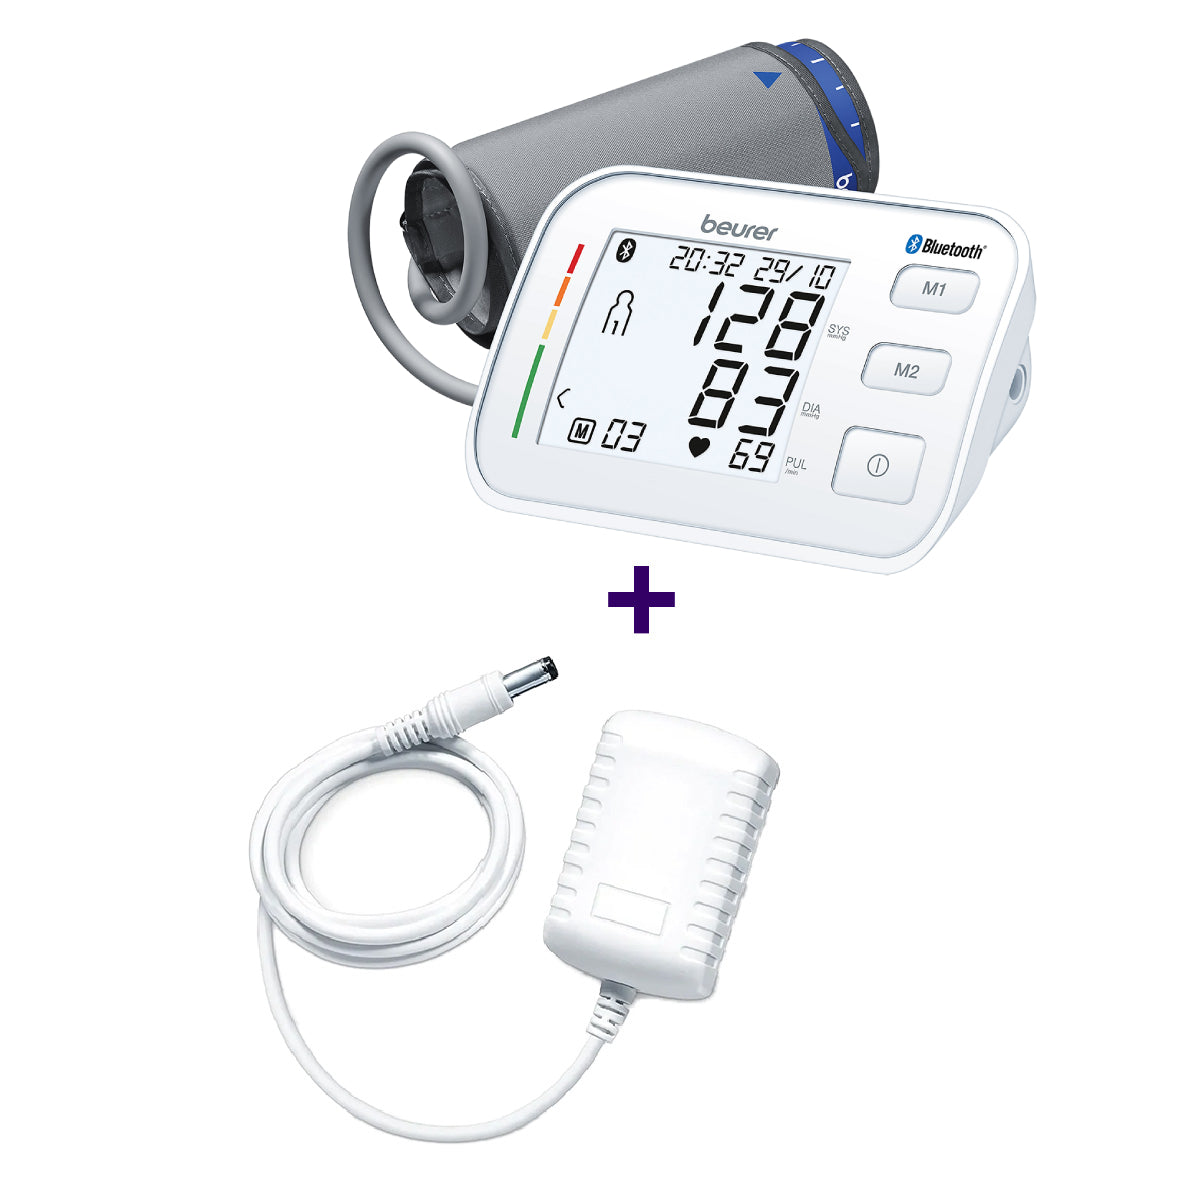 Monitor de presión arterial baumanómetro digital de brazo BM57 + adaptador de corriente Marca Beurer